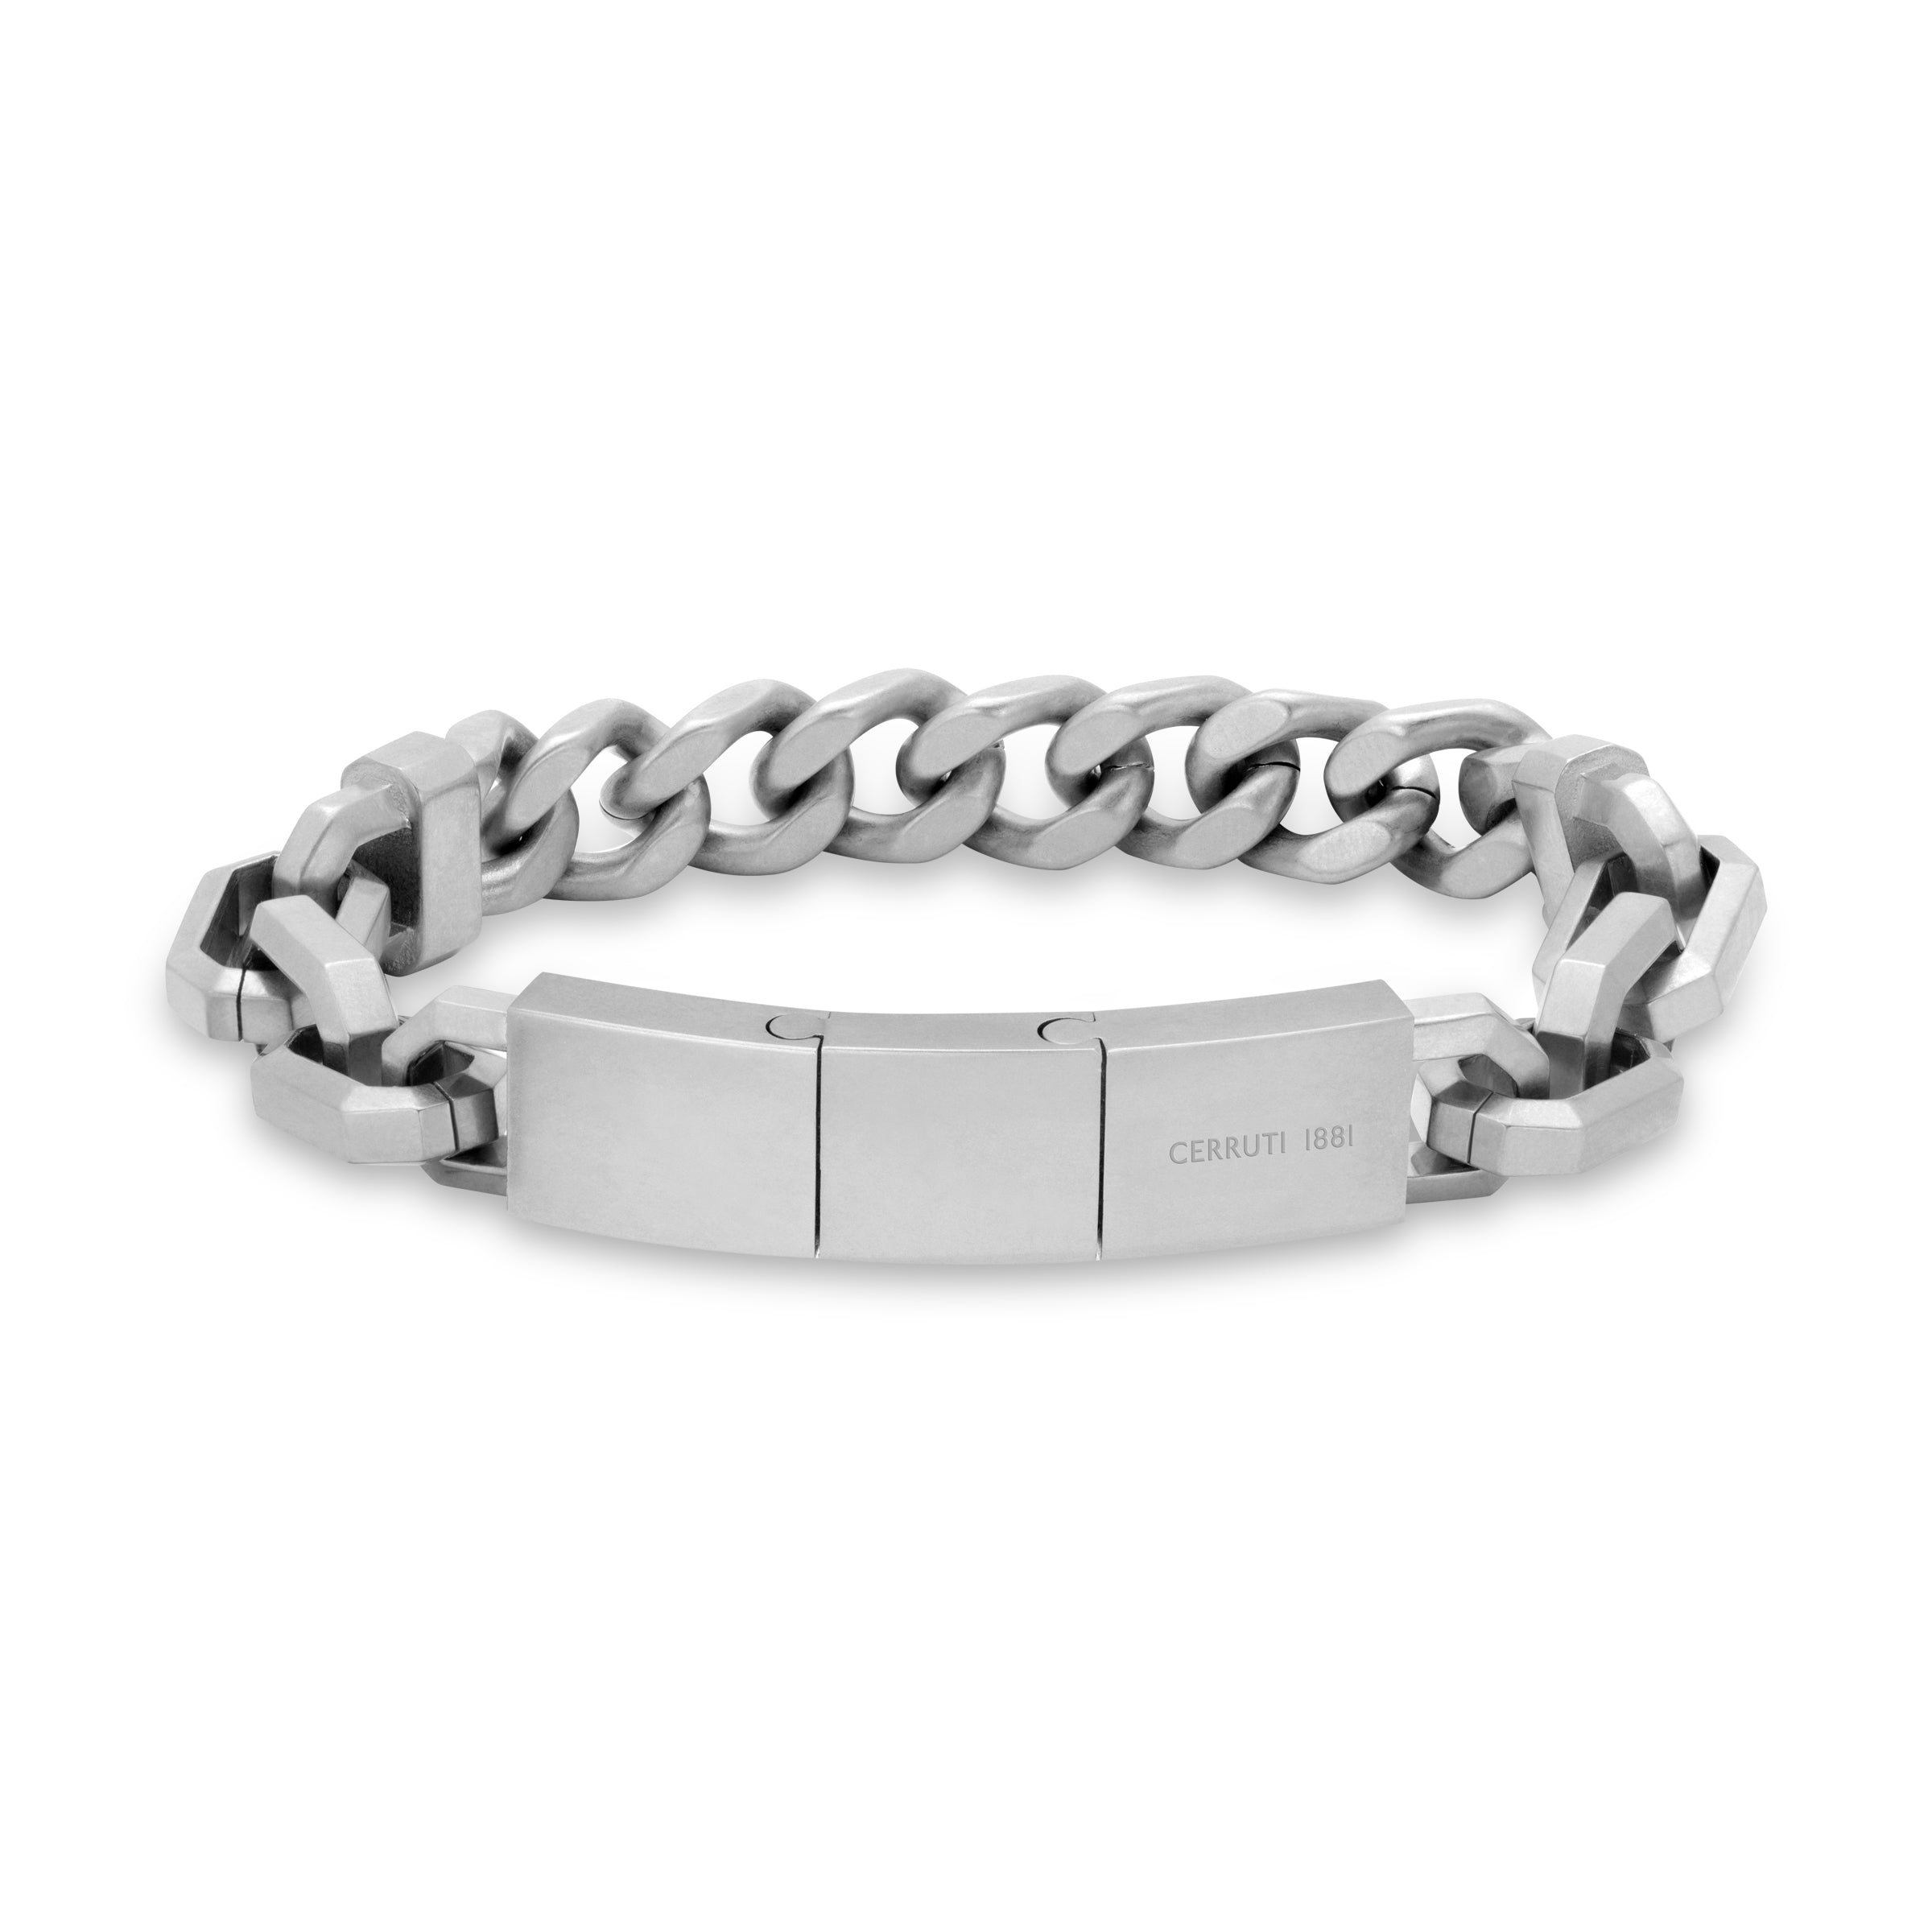 Cerruti Silver Bracelet for Men - CERBR-0008